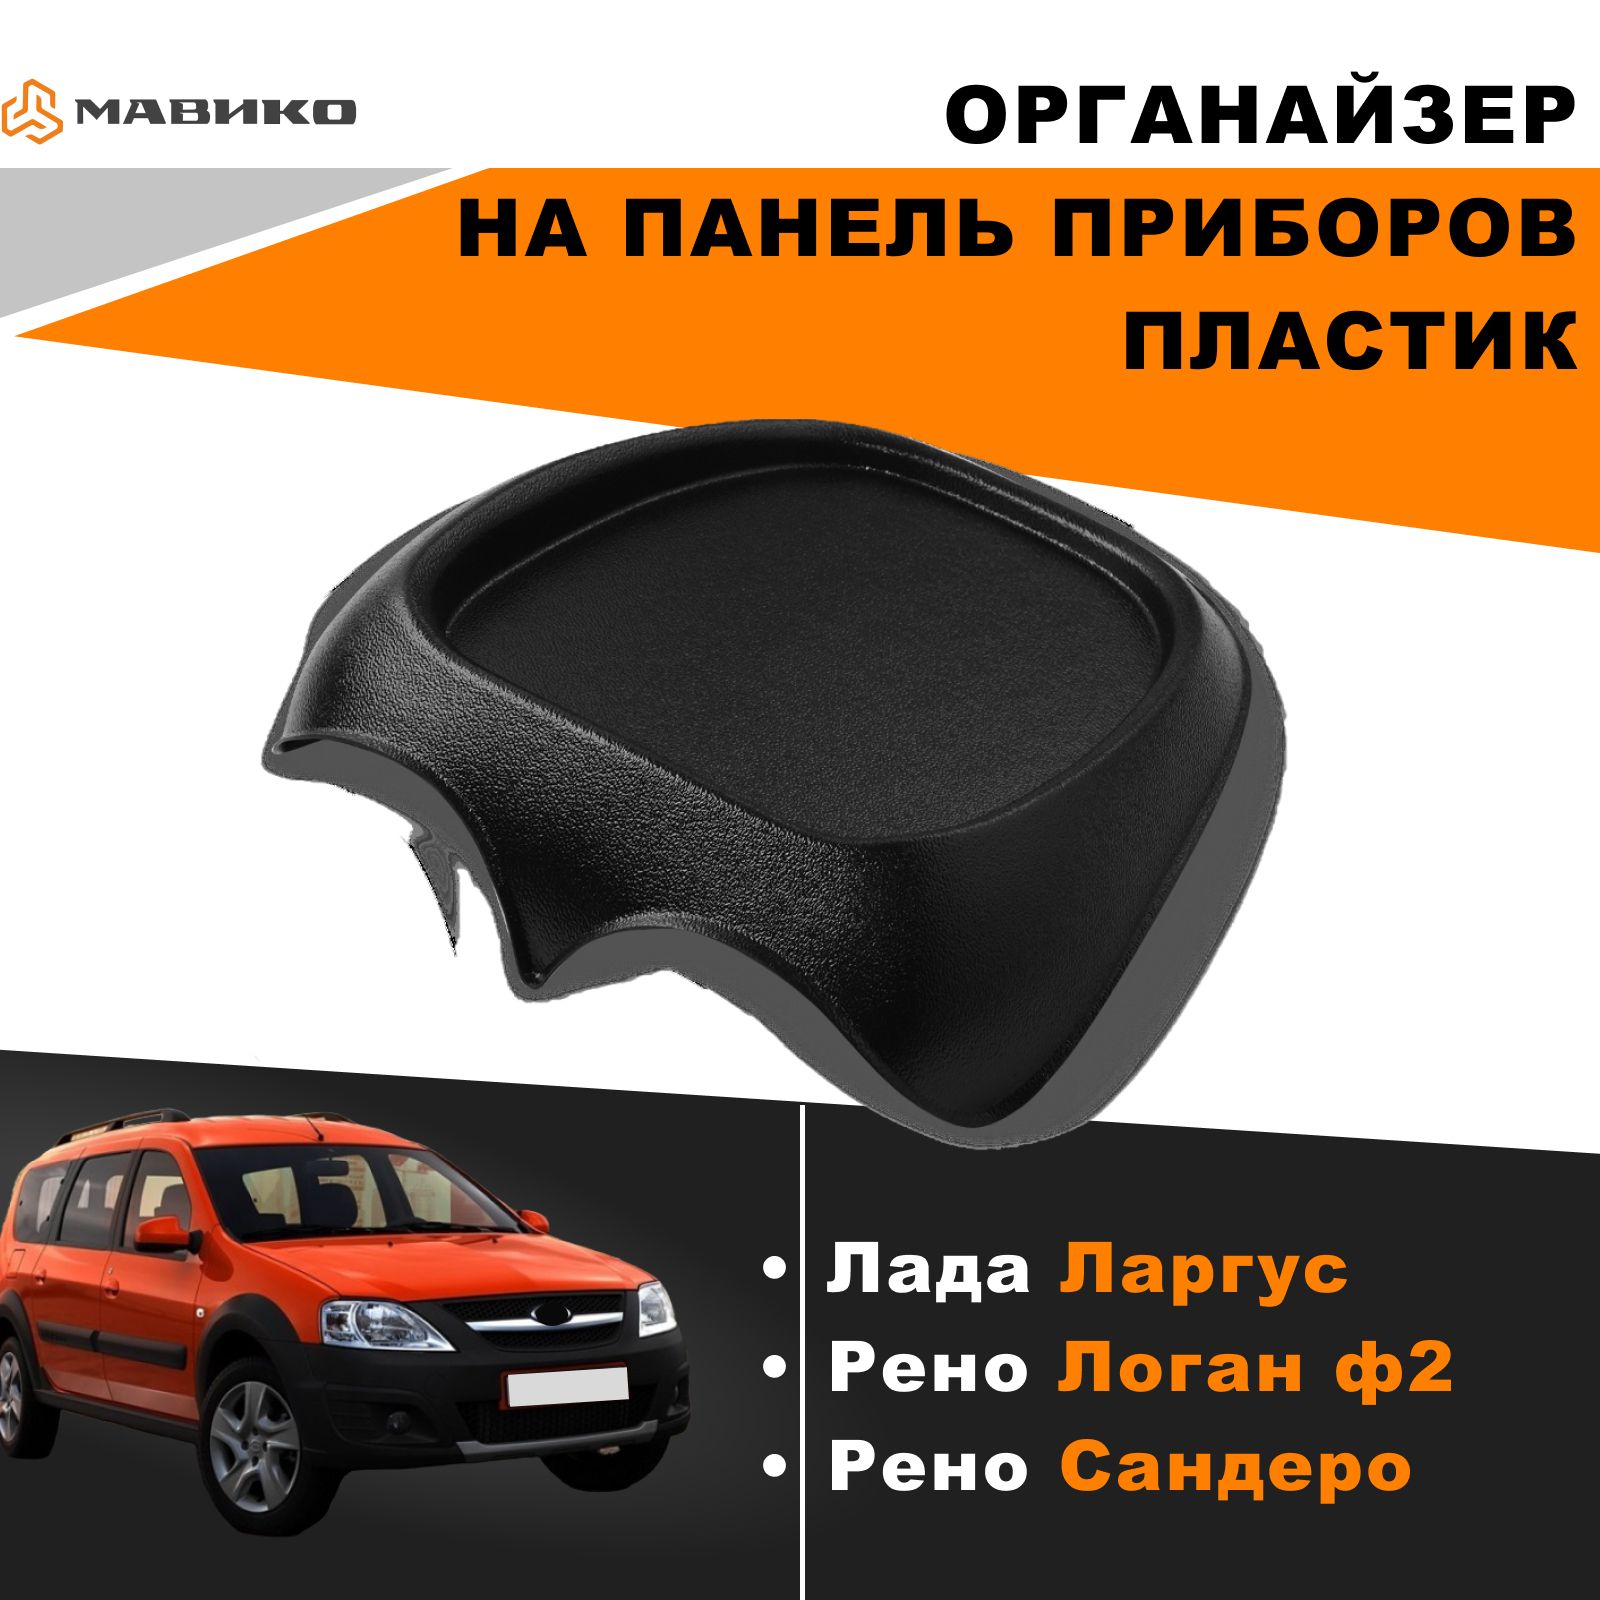 Задняя полка Renault Sandero Stepway - купить в Украине, новые и б/у | luchistii-sudak.ru